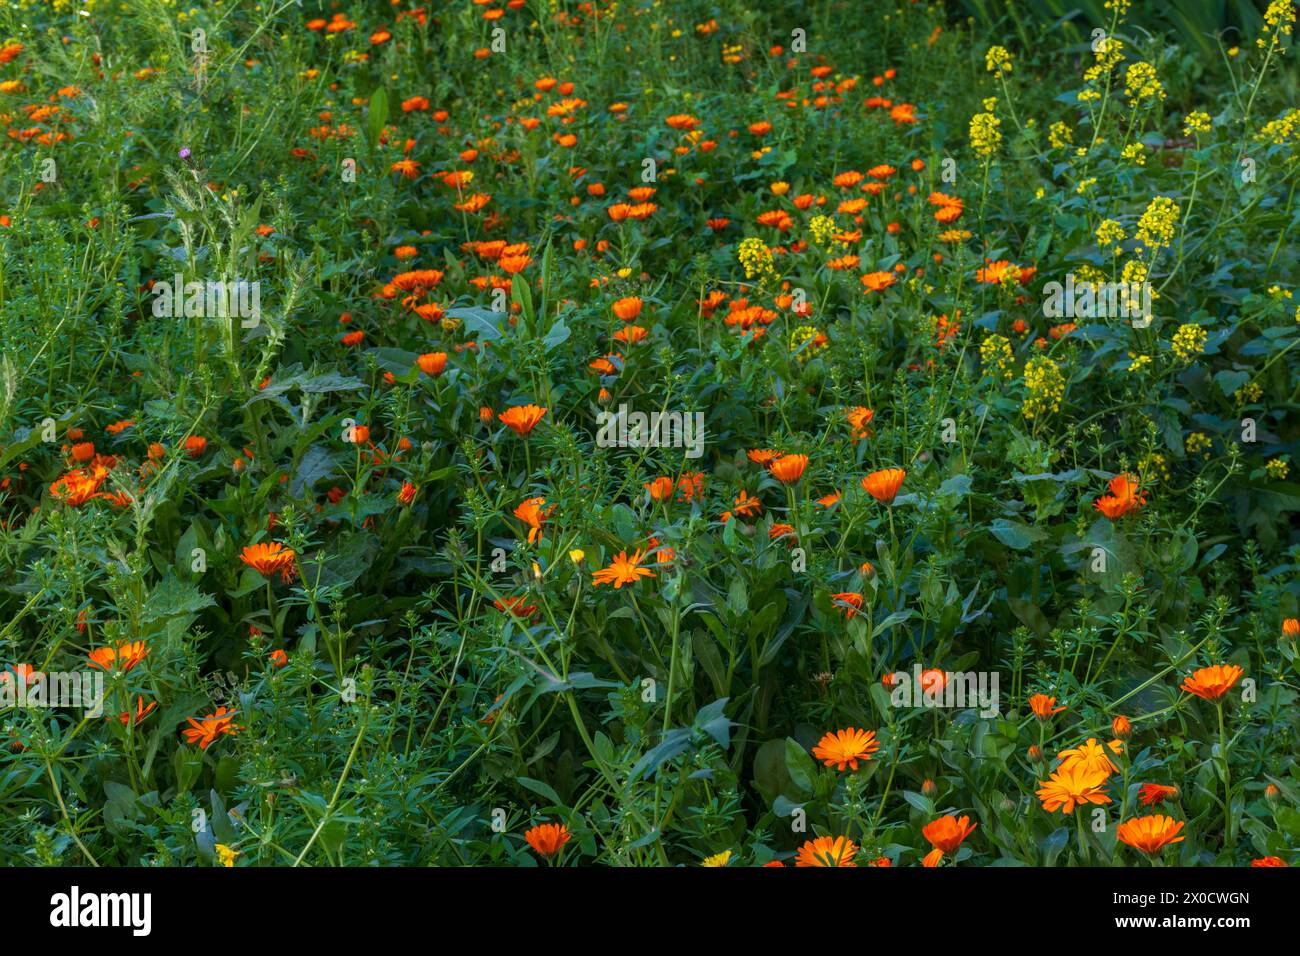 Campo lleno de vegetación y múltiples flores en primavera Stock Photo